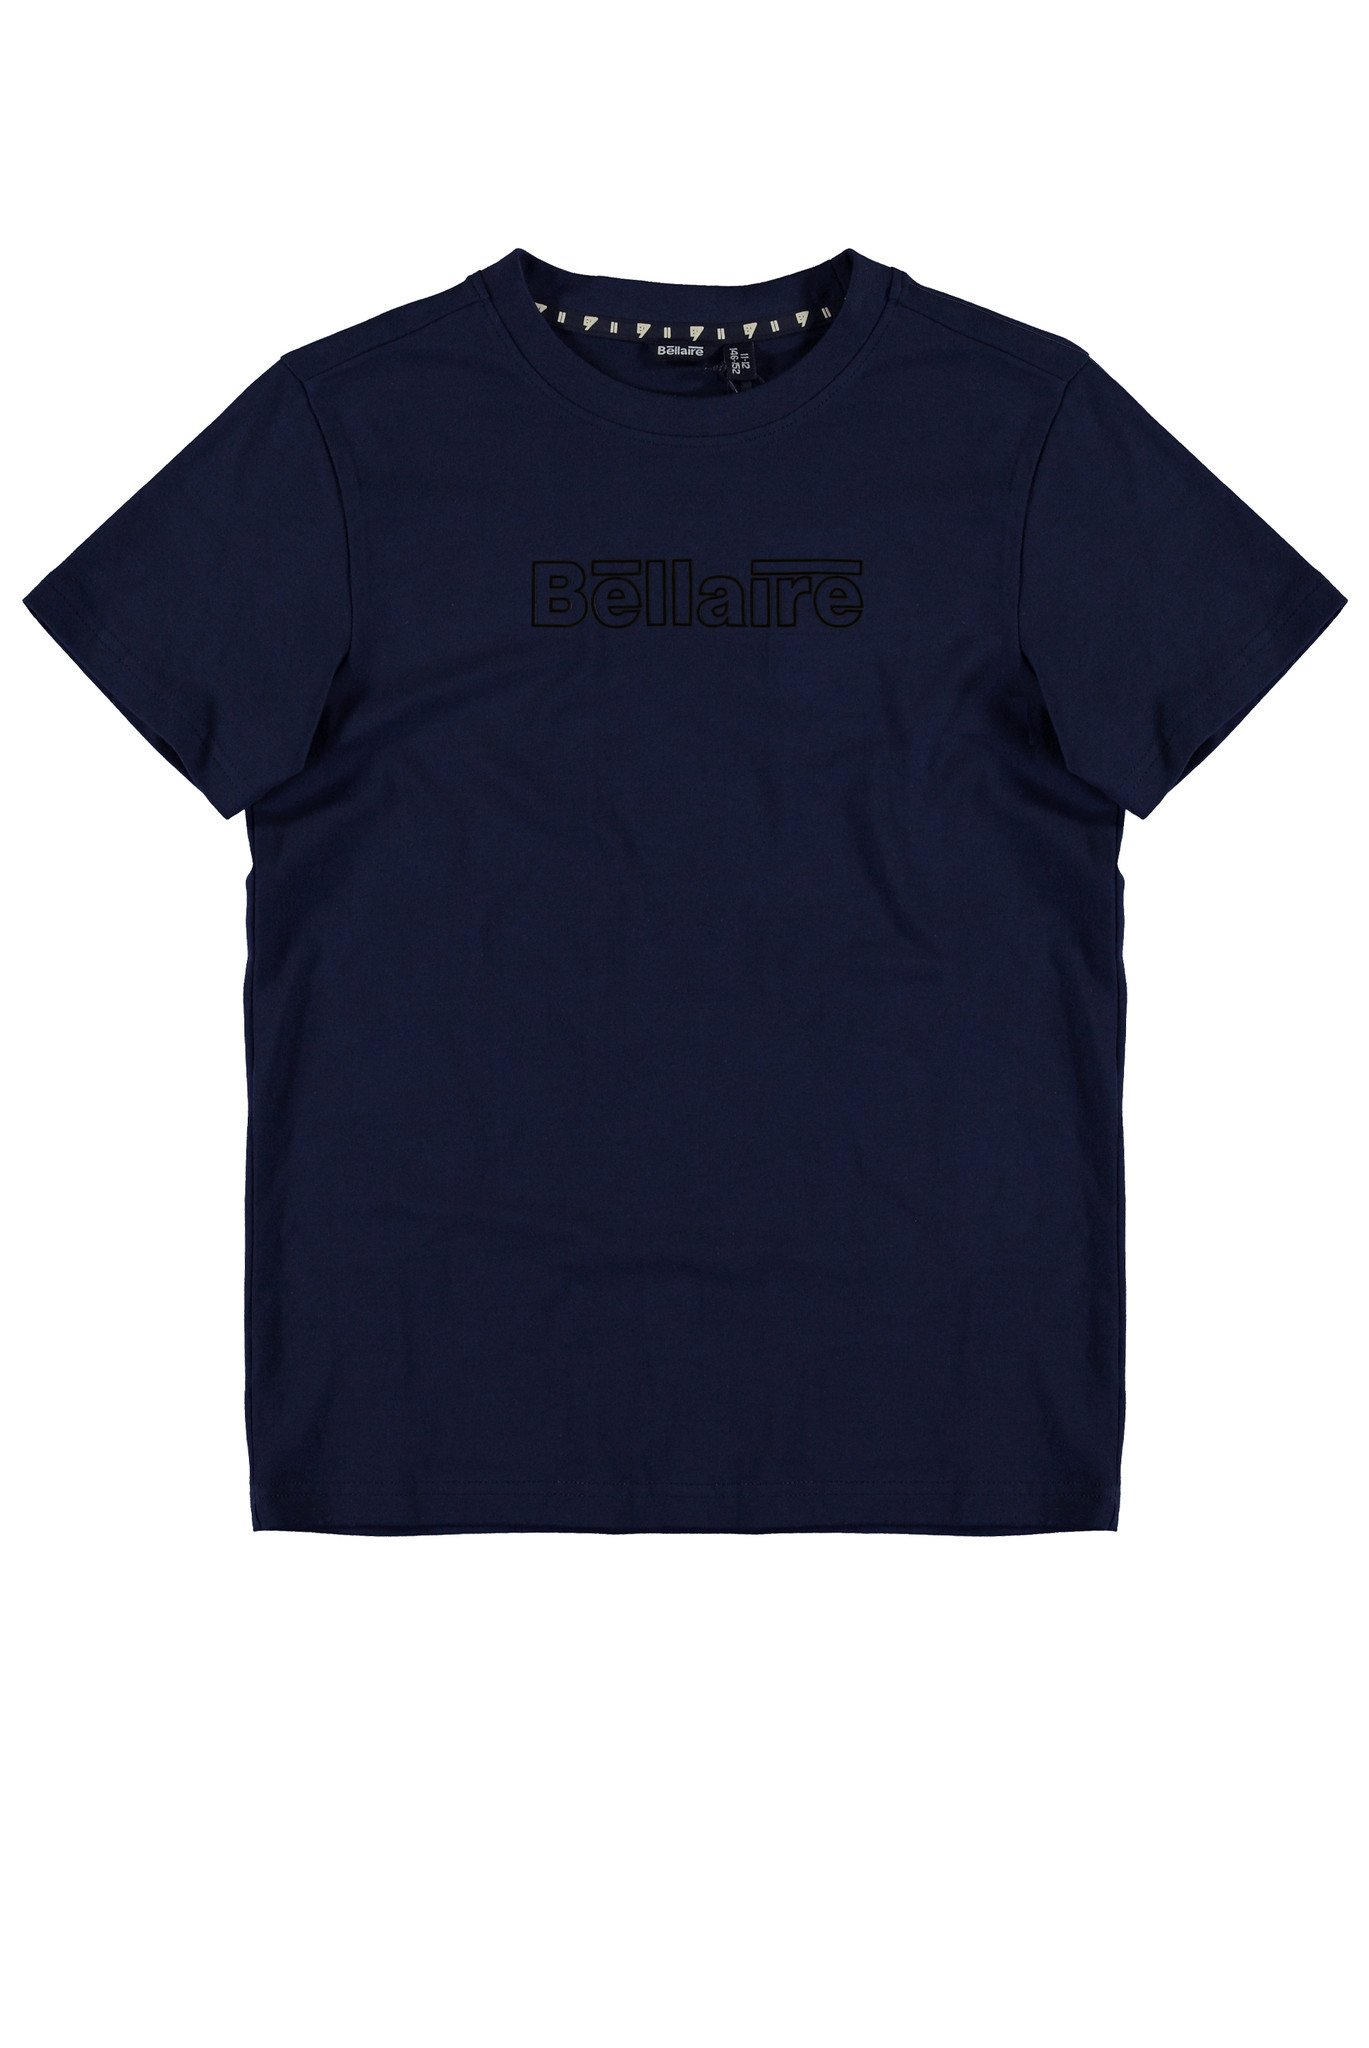 Bellaire Jongens t-shirt - Navy Blazer